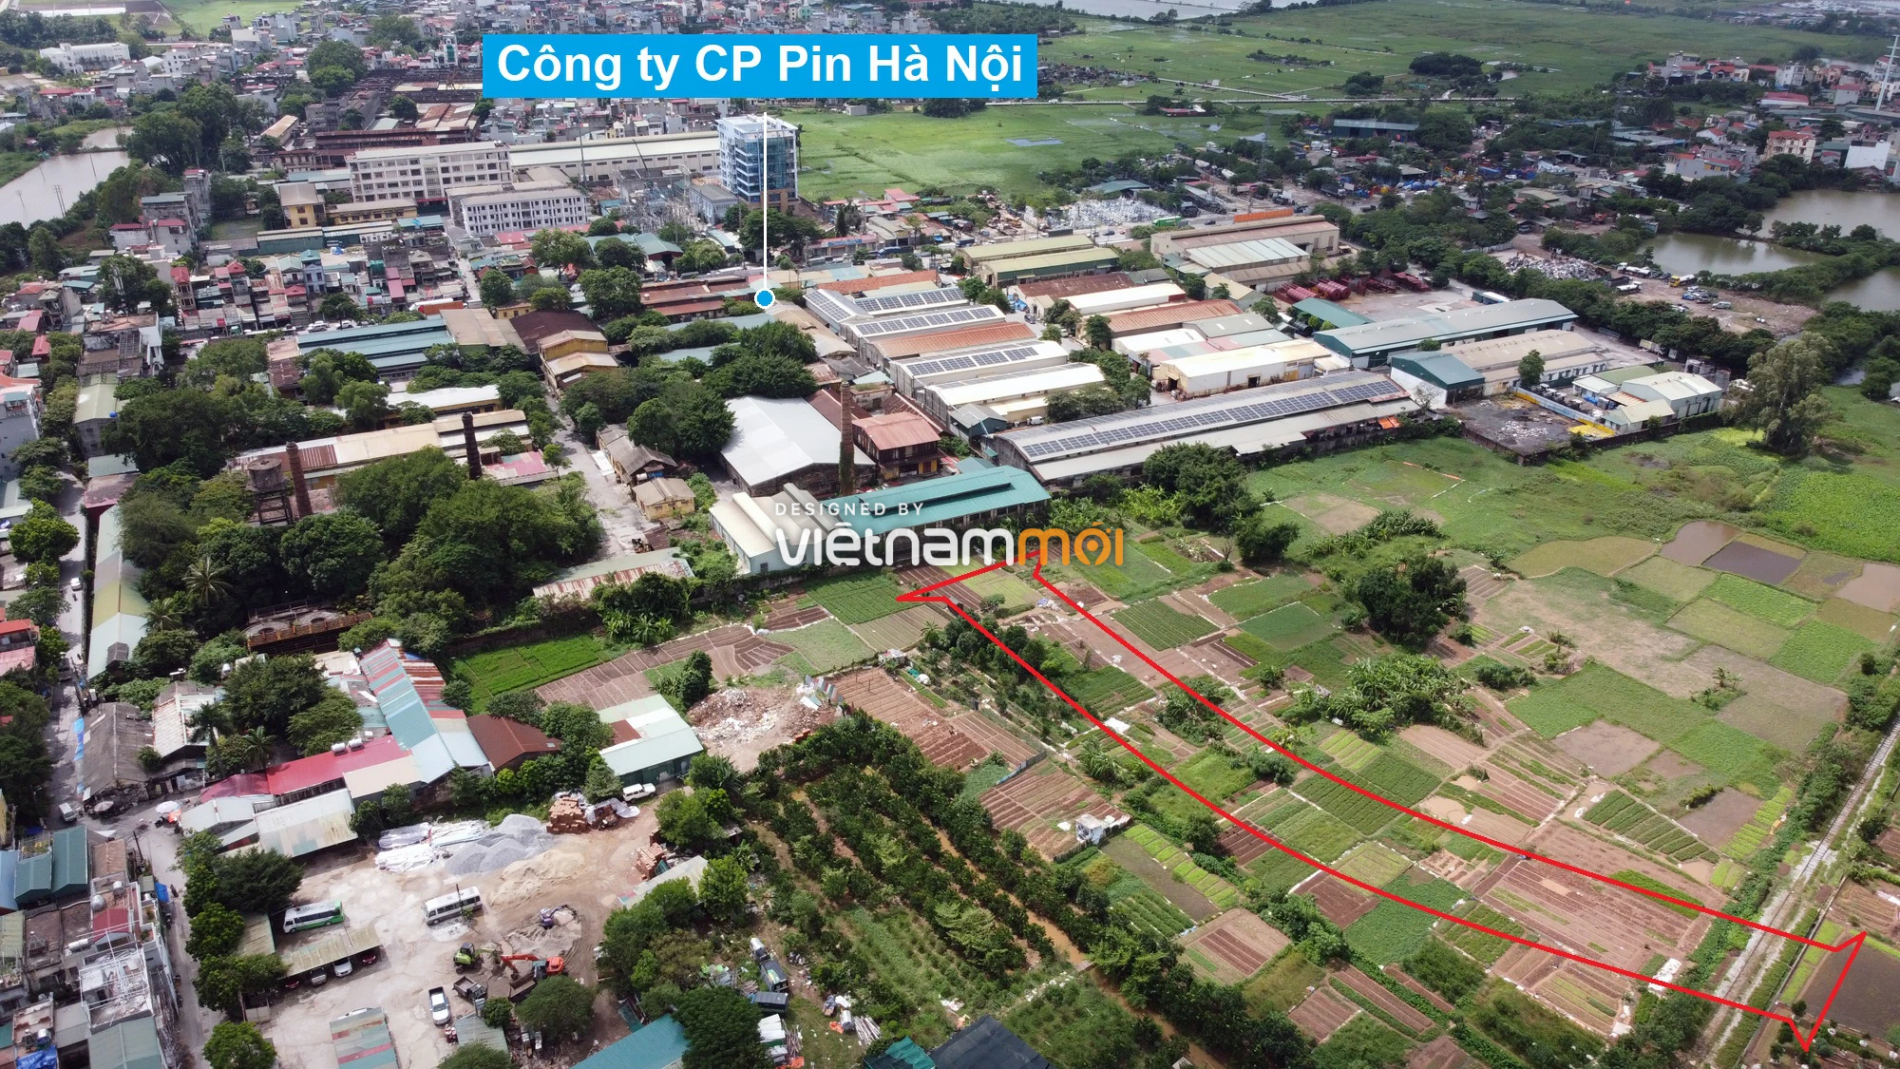 Những khu đất sắp thu hồi để mở đường ở xã Tam Hiệp, Thanh Trì, Hà Nội (phần 2) - Ảnh 17.